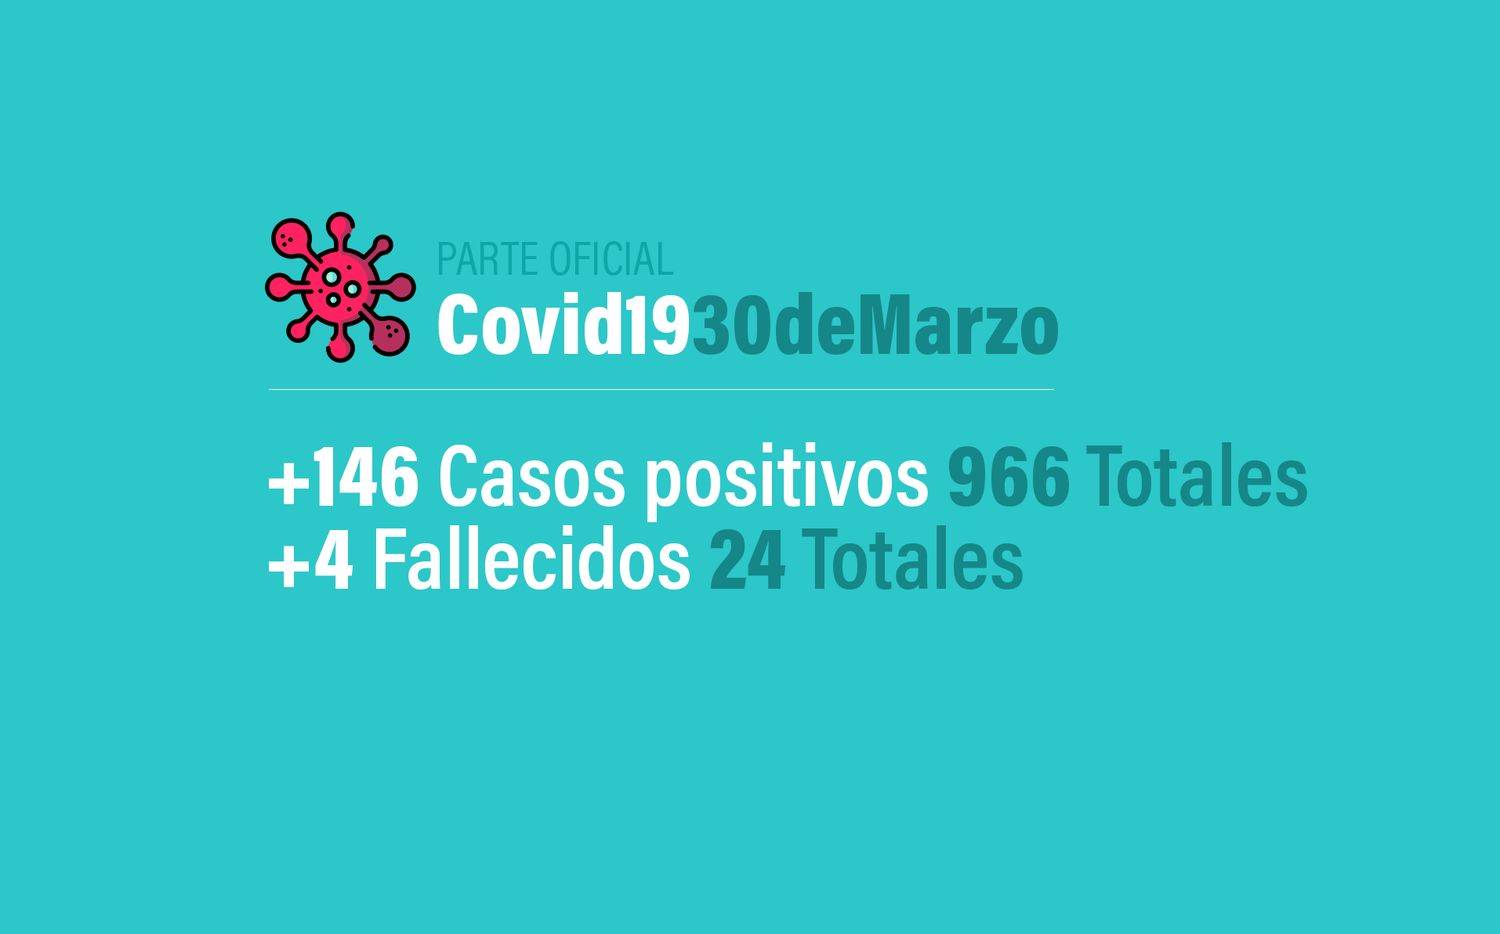 Coronavirus en Argentina: 146 nuevos casos, 966 infectados y 24 muertos en total al 30 de marzo